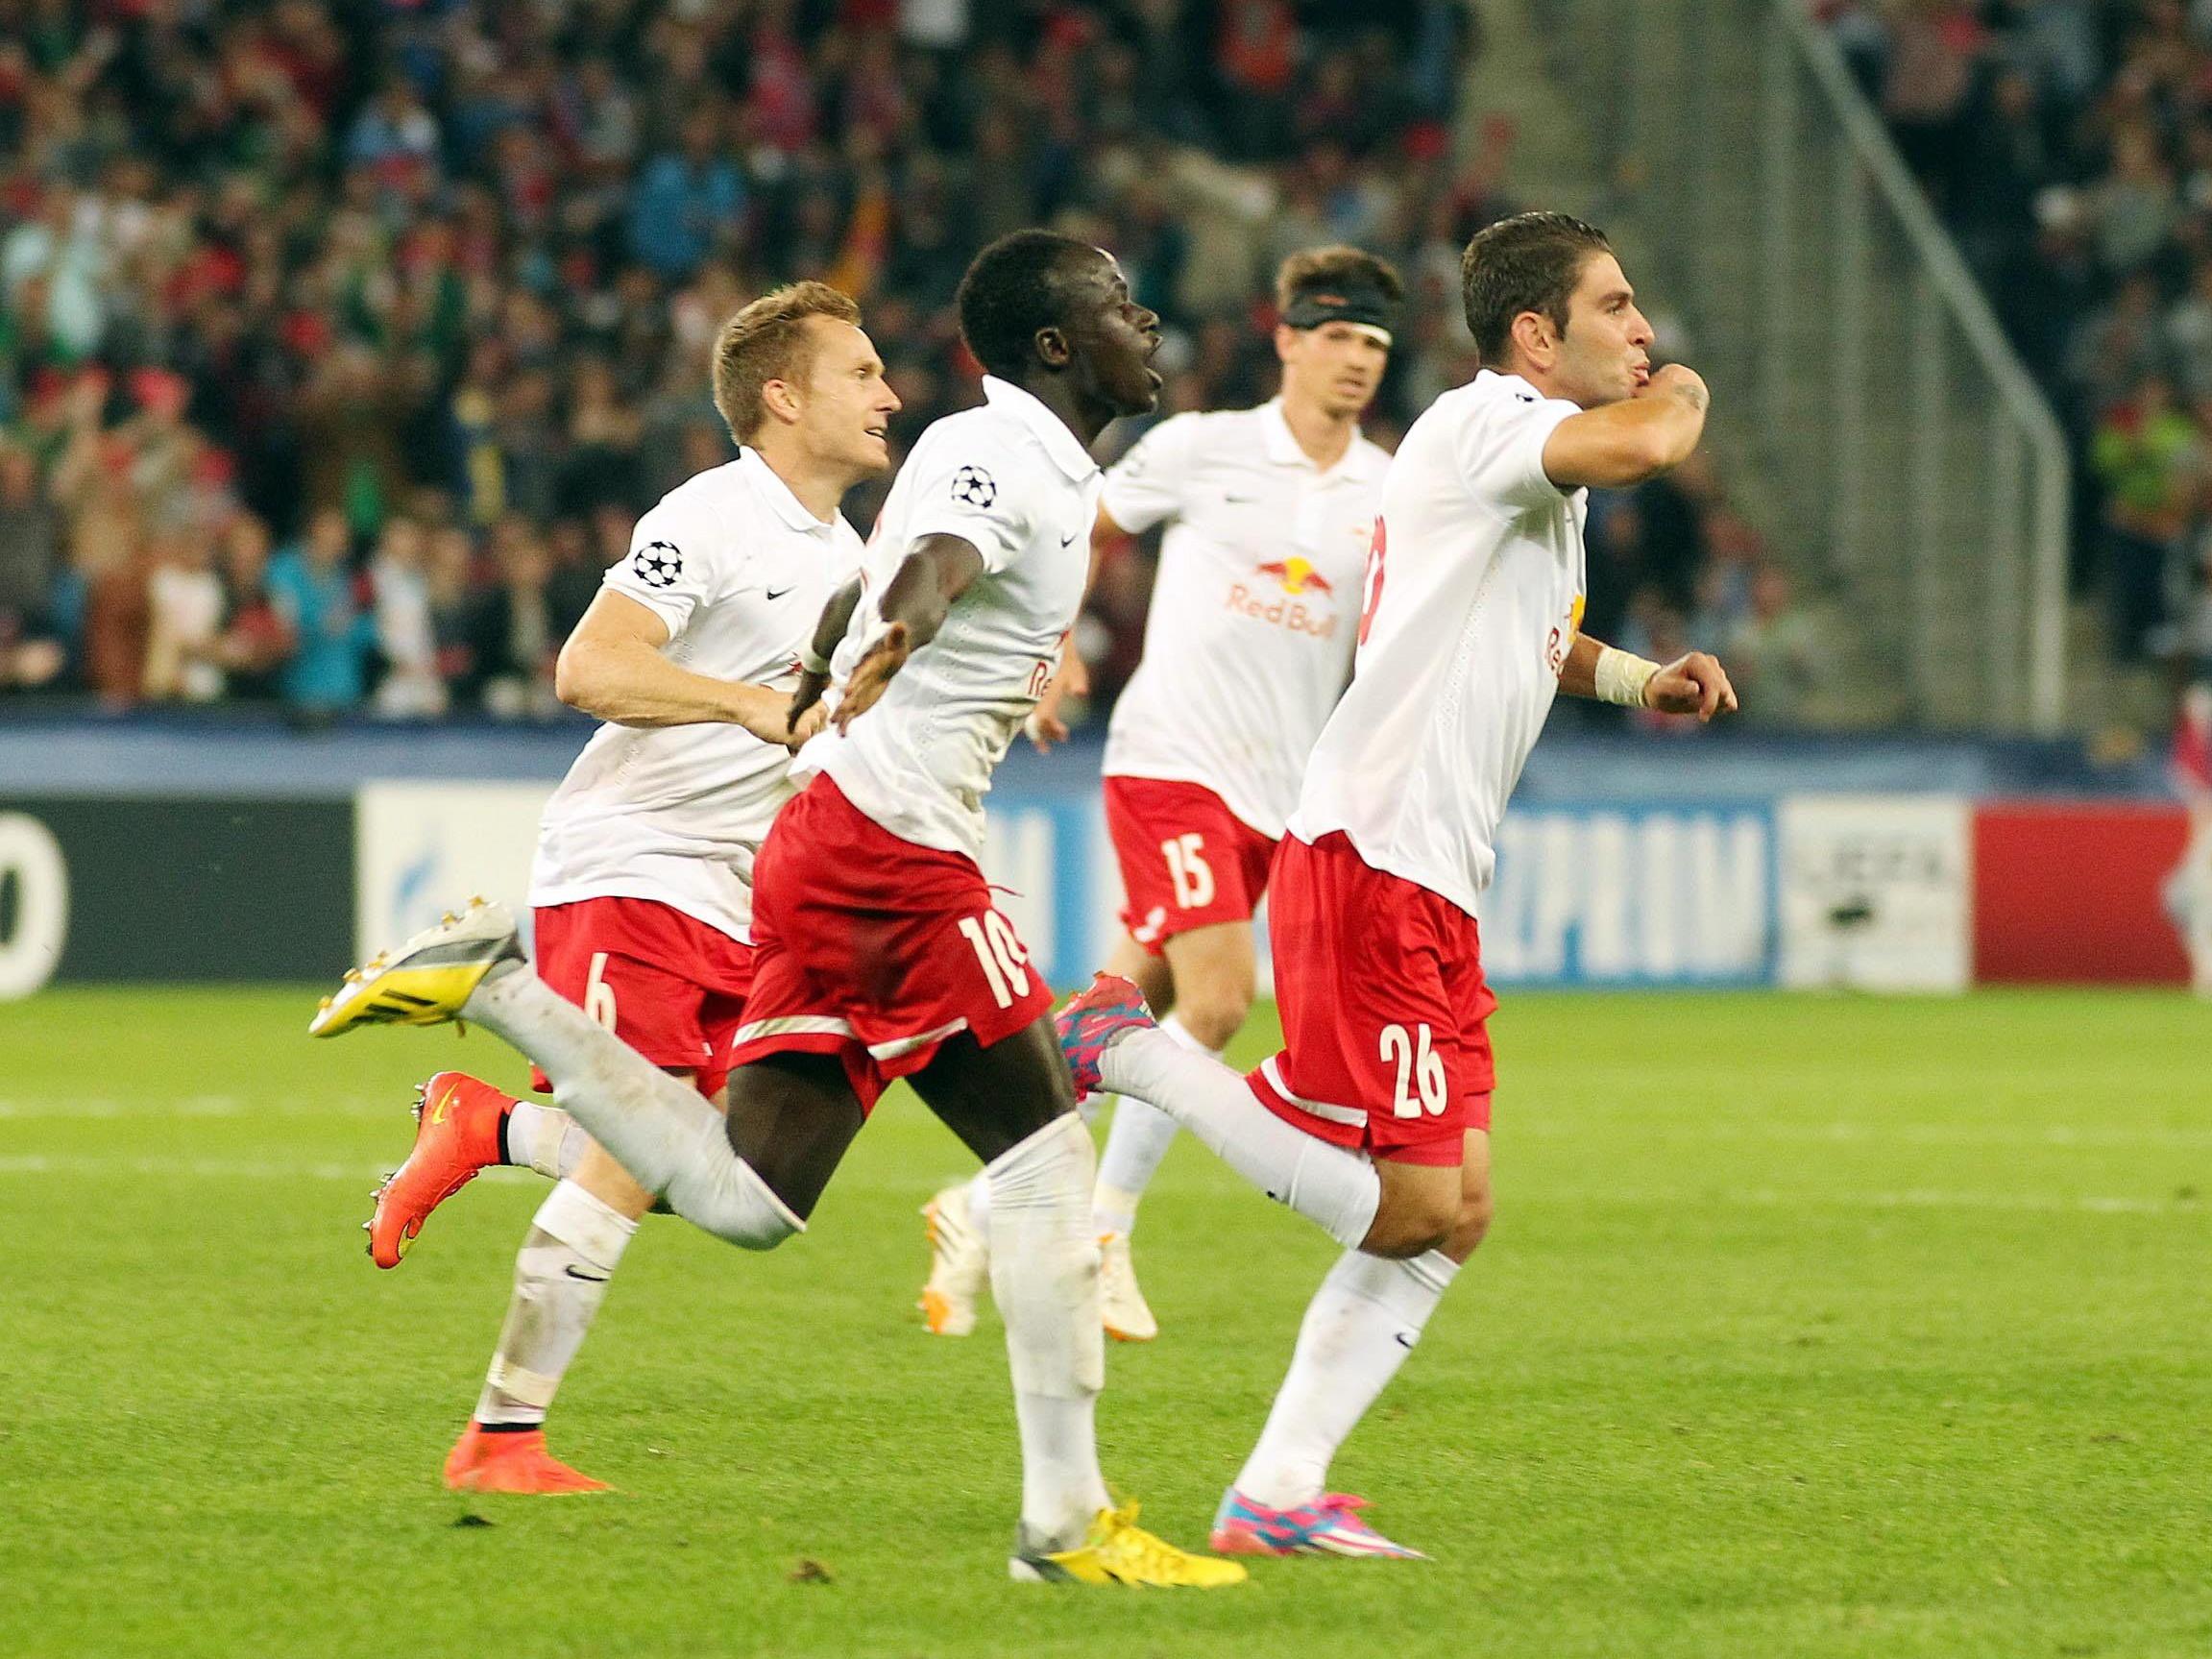 LIVE-Ticker zum Spiel Red Bull Salzburg gegen FK Austria Wien ab 16.30 Uhr.